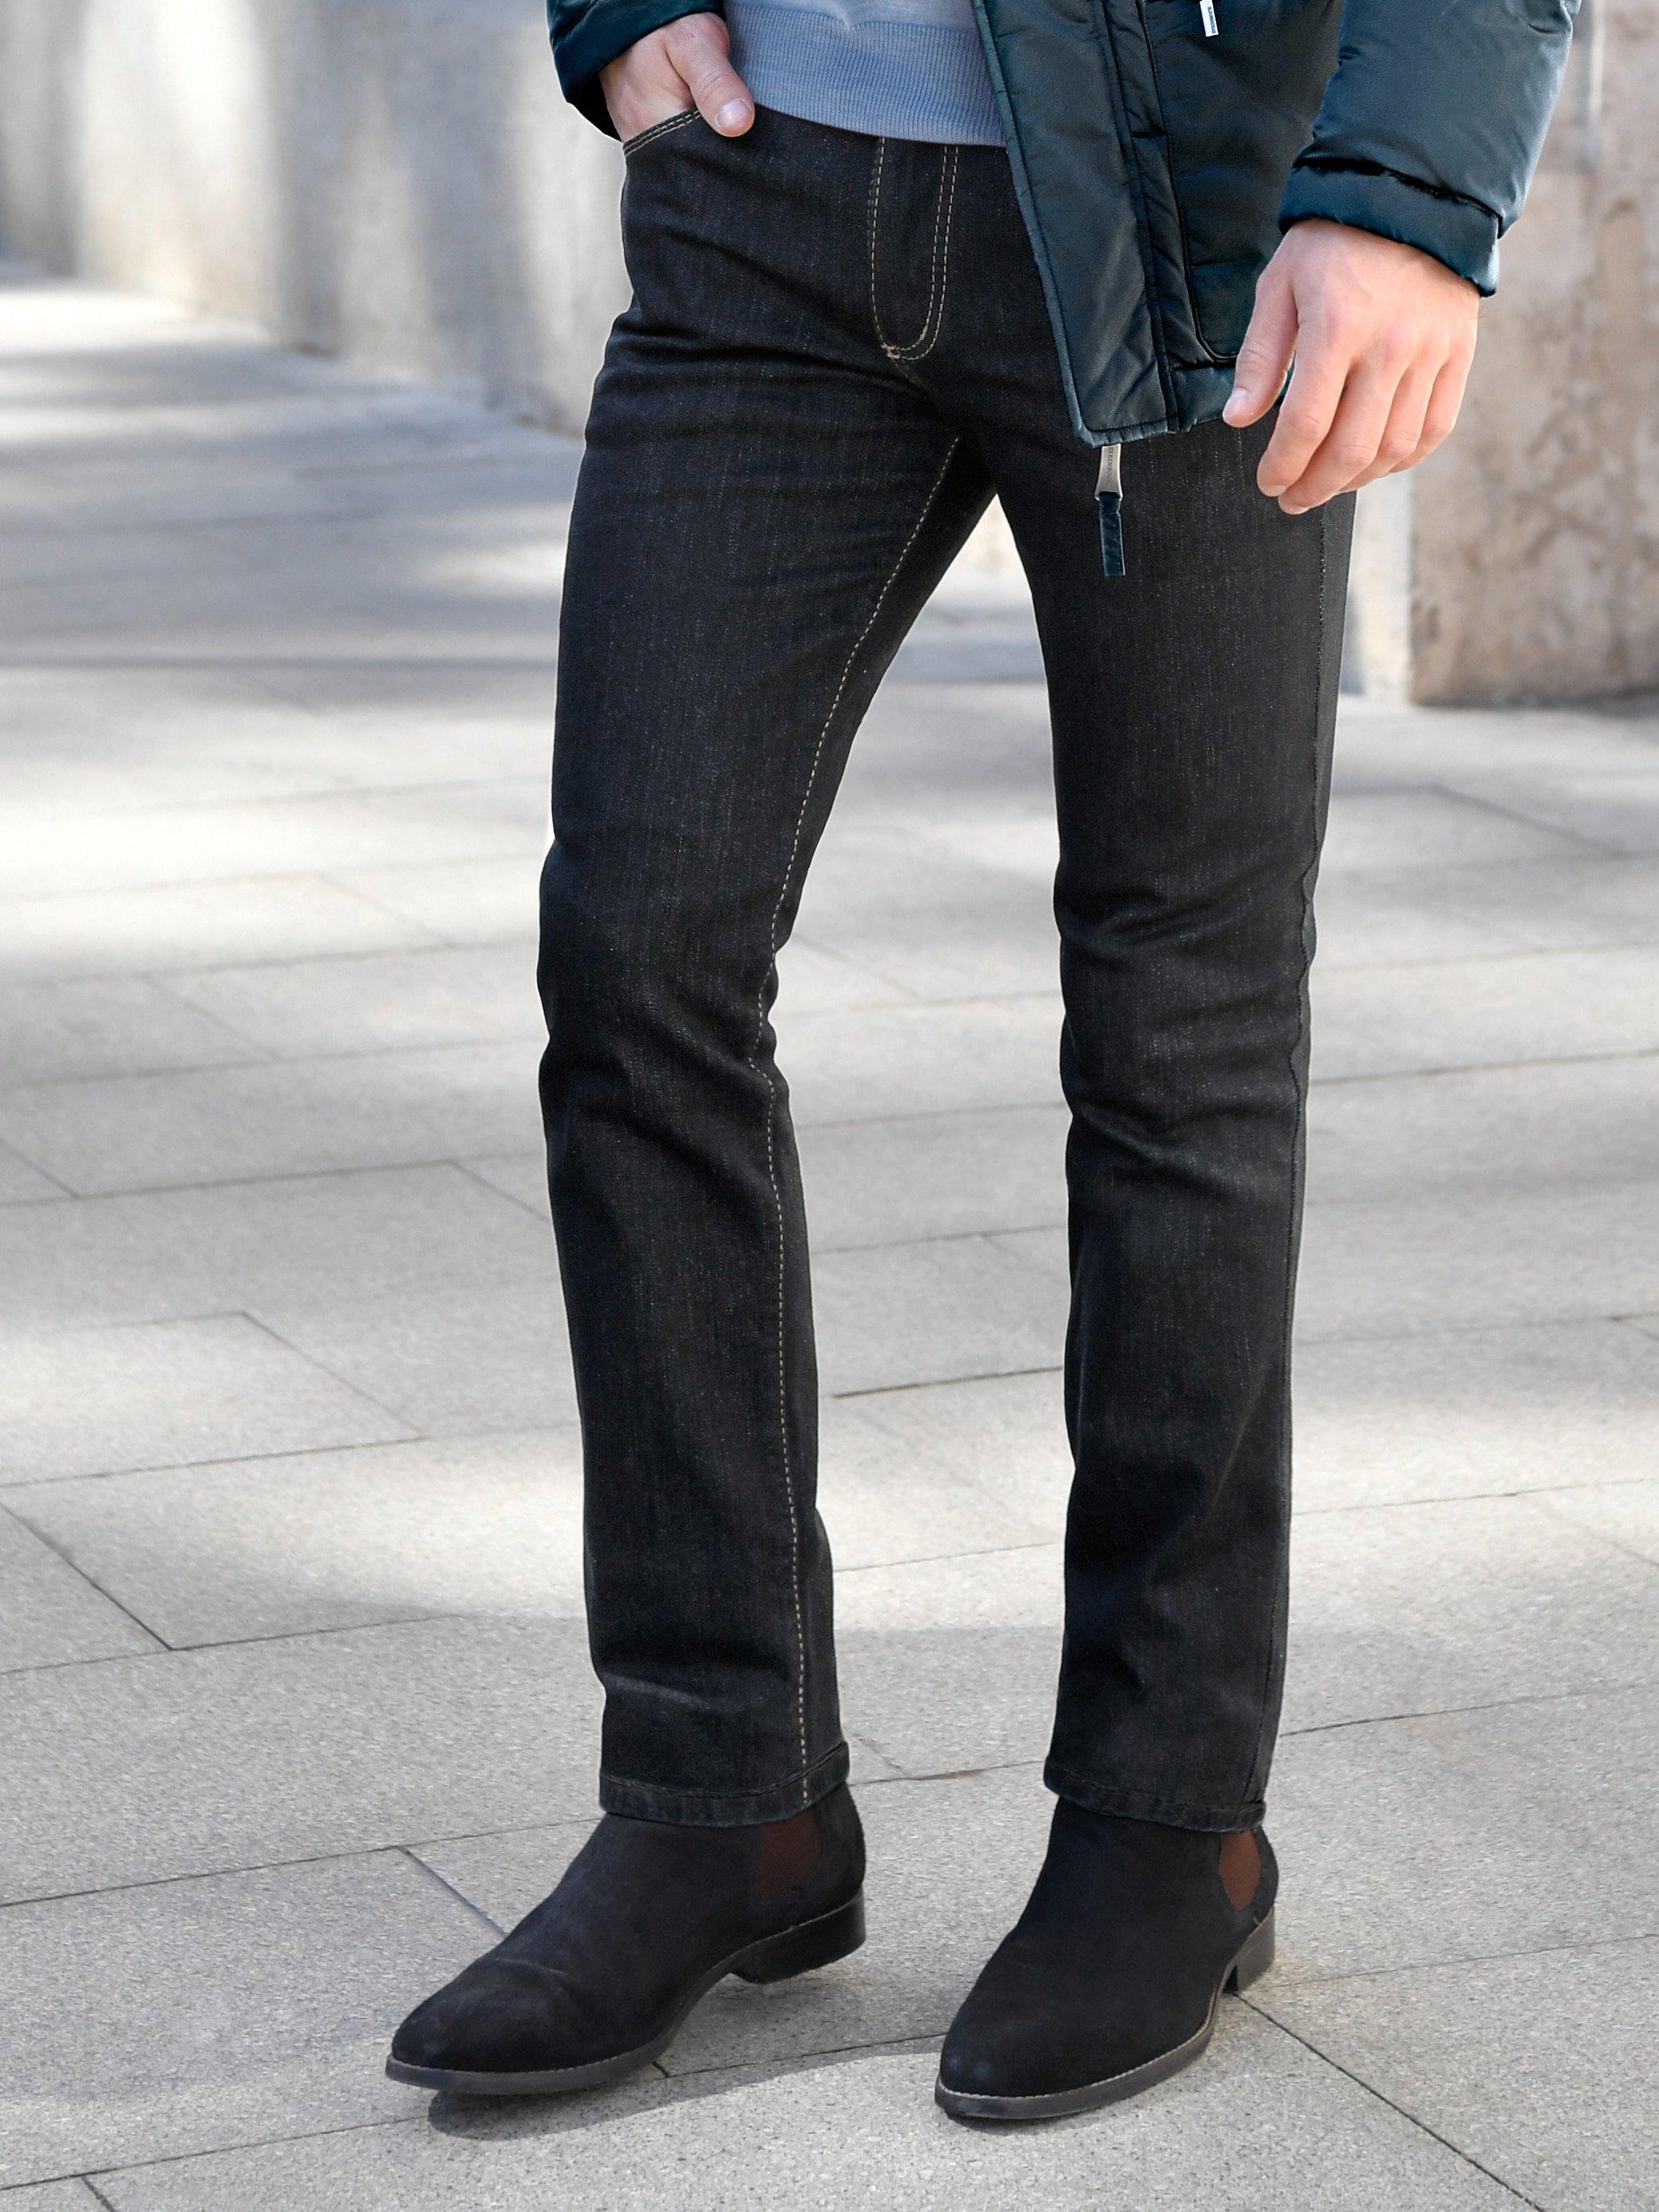 JOKER - Jeans 34 inch - Model FREDDY